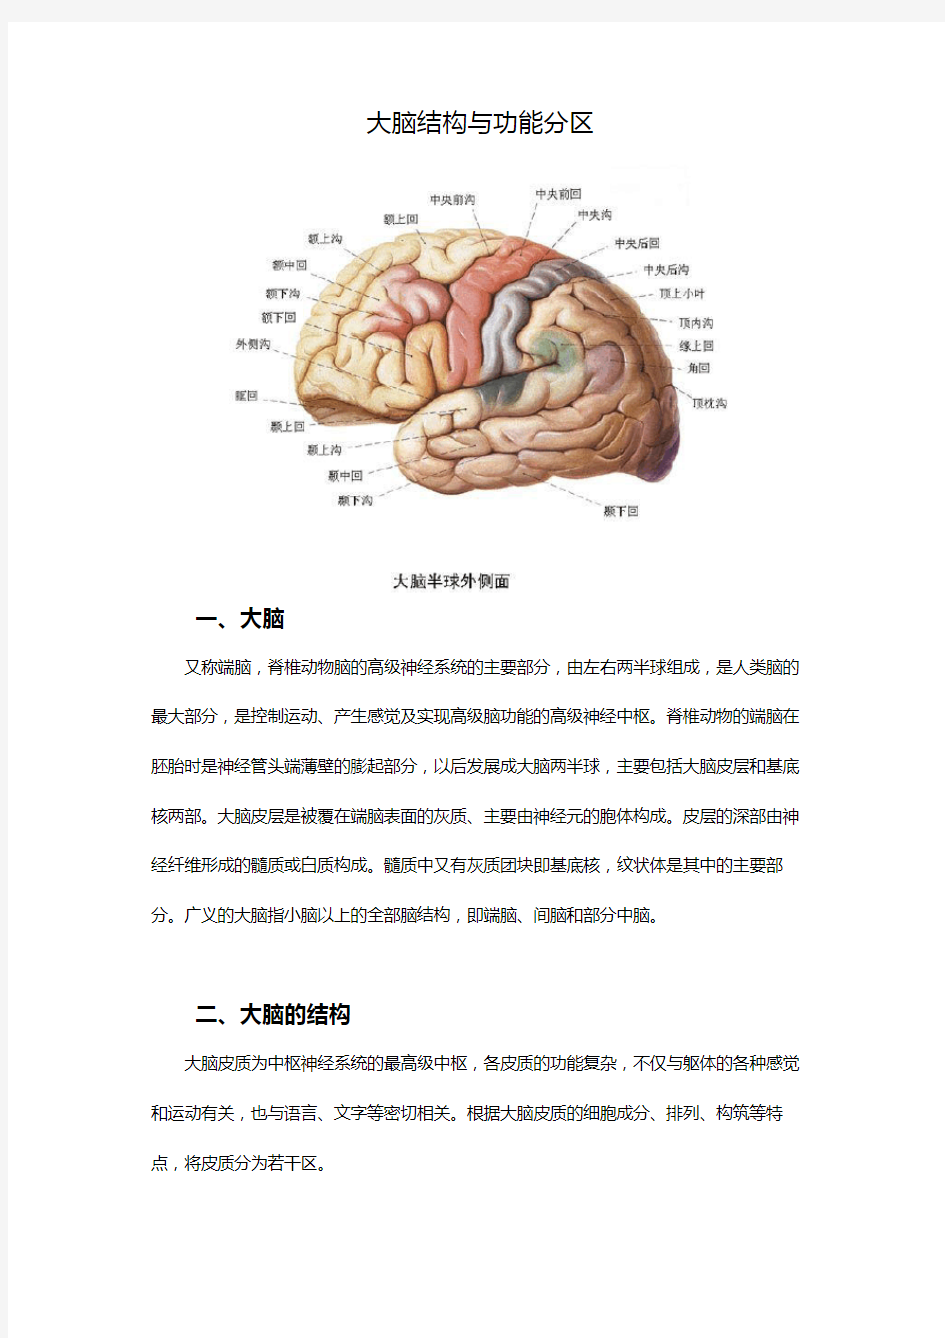 大脑结构与功能分区